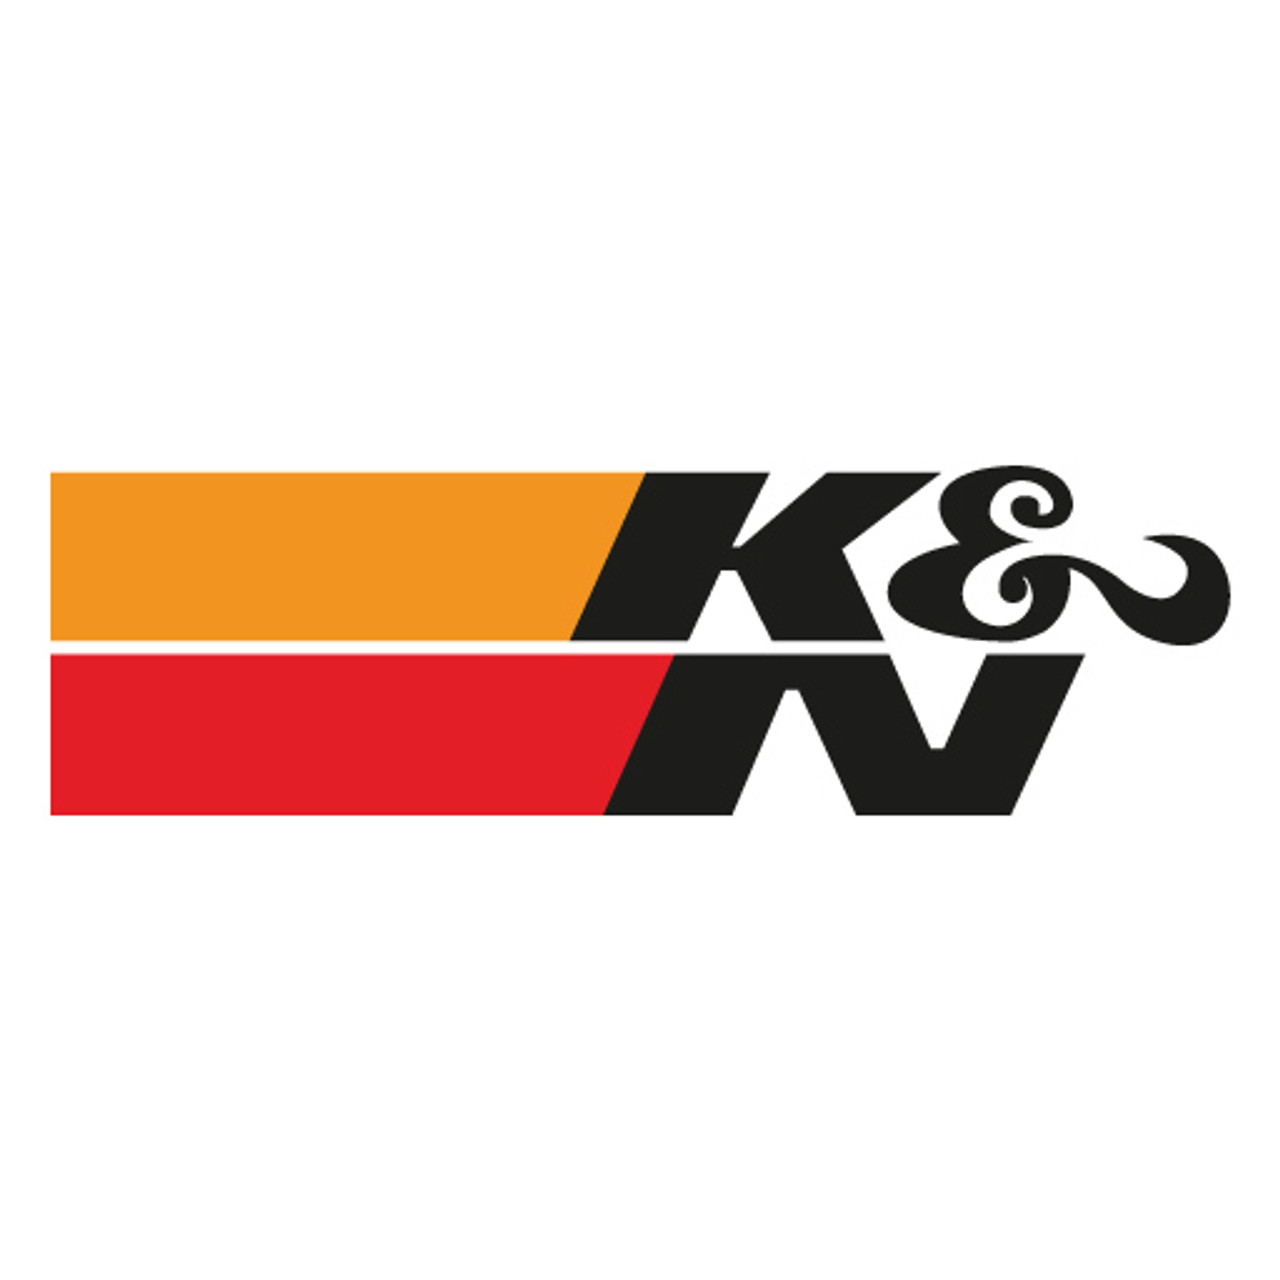 k-n-logo-vector-download.jpg